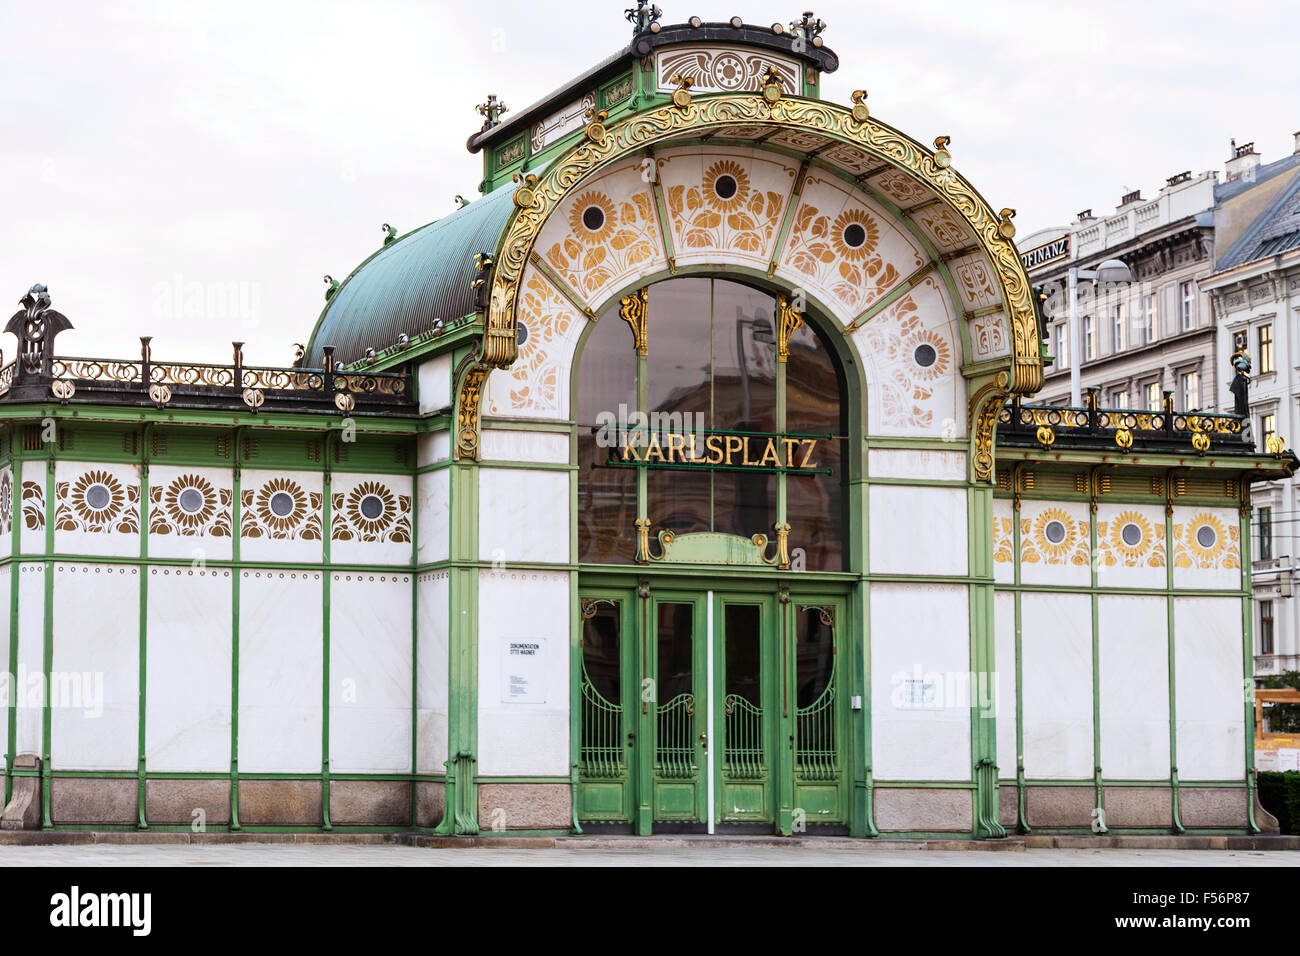 Wien, Österreich - 26. September 2015: Eingang in Karlsplatz Stadtbahn-Station im Otto Wagner Pavillon. Otto Wagner, Architekt o Stockfoto